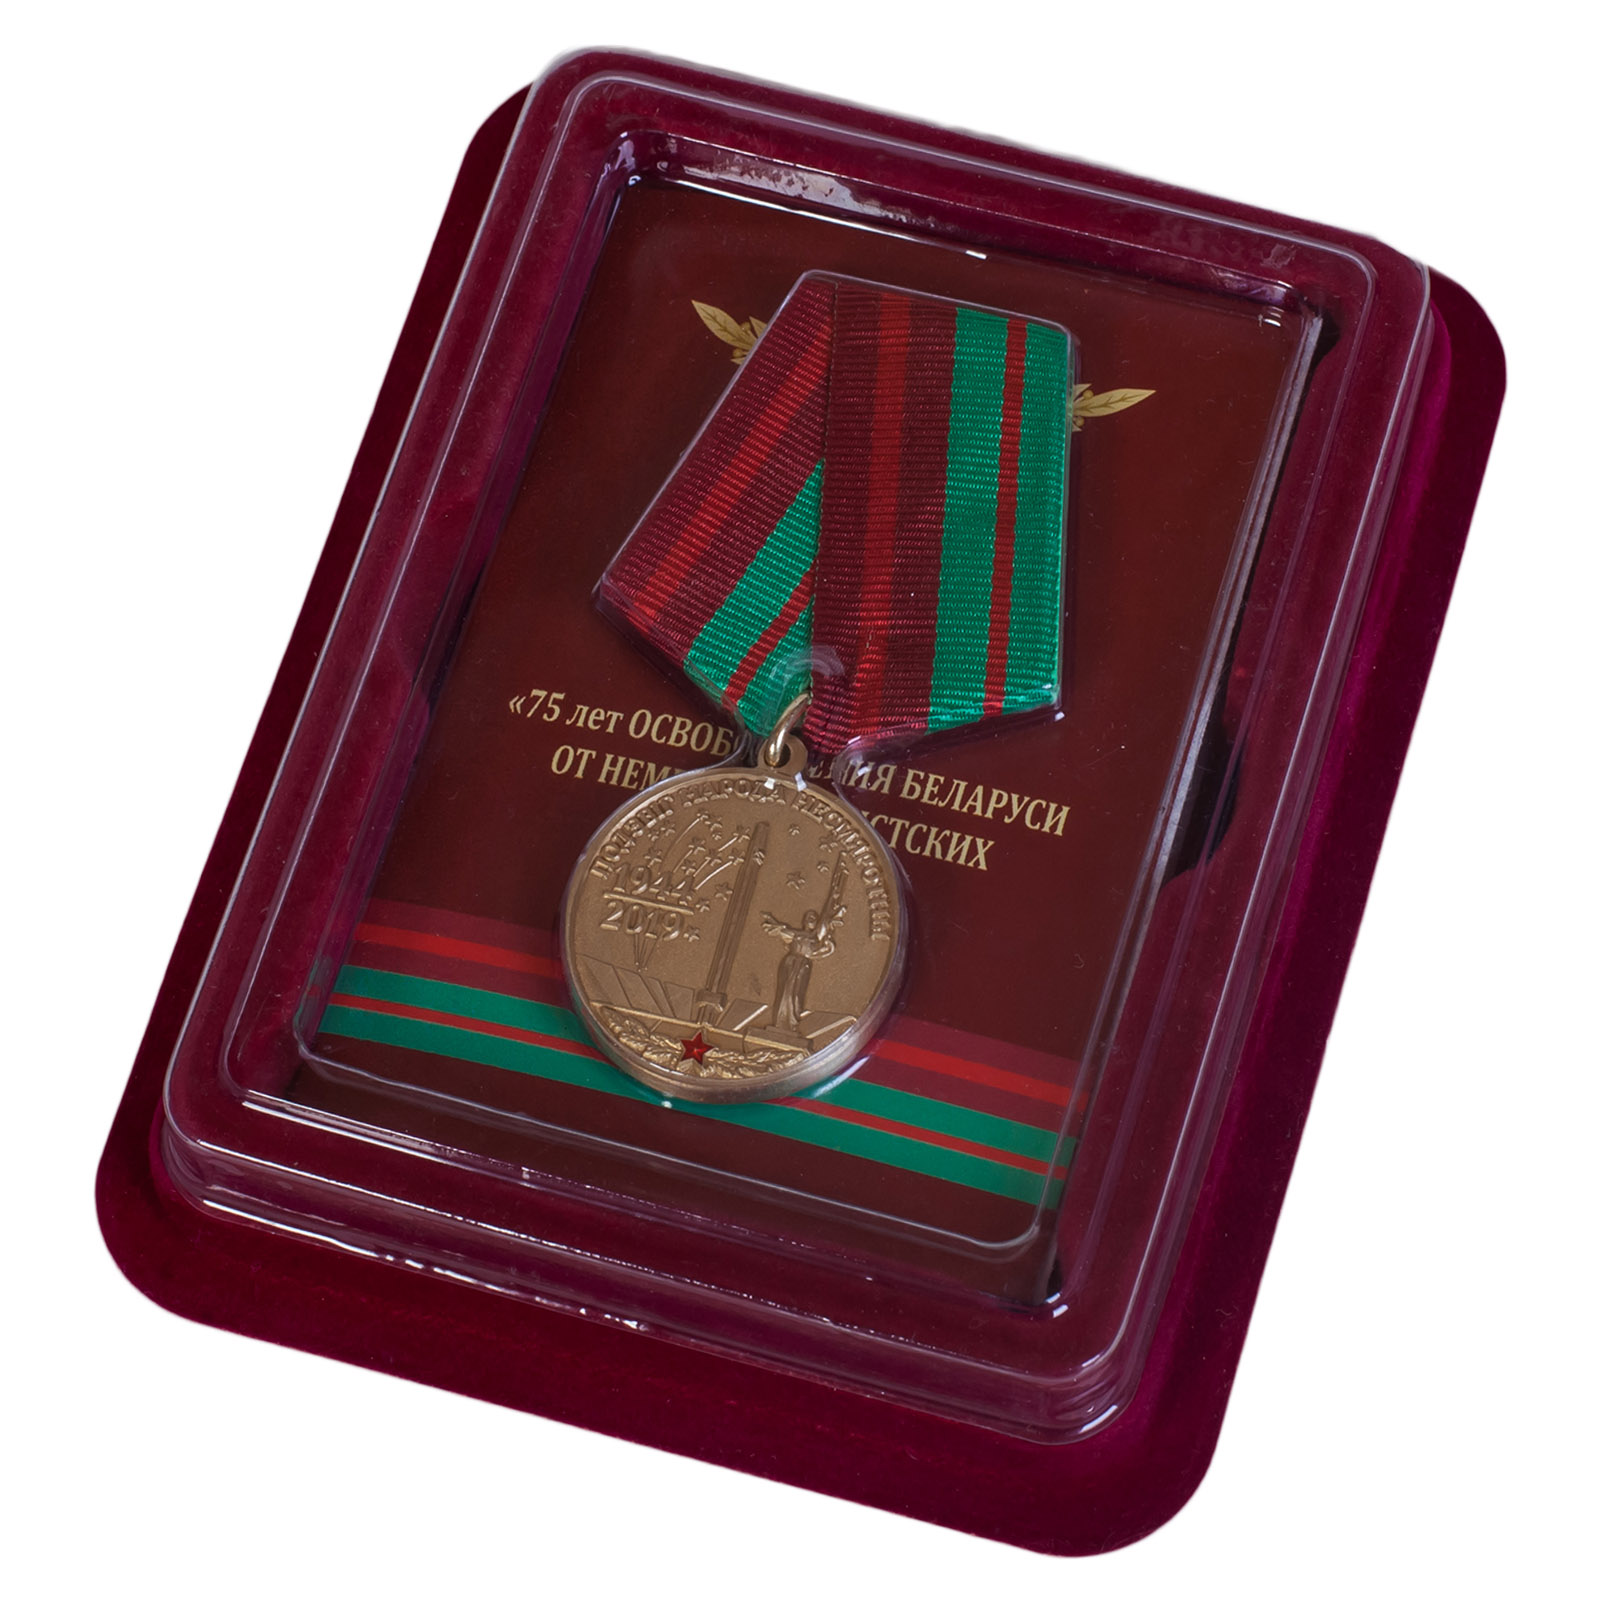 Купить памятную медаль 75 лет освобождения Беларуси от немецко-фашистских захватчиков в подарок онлайн